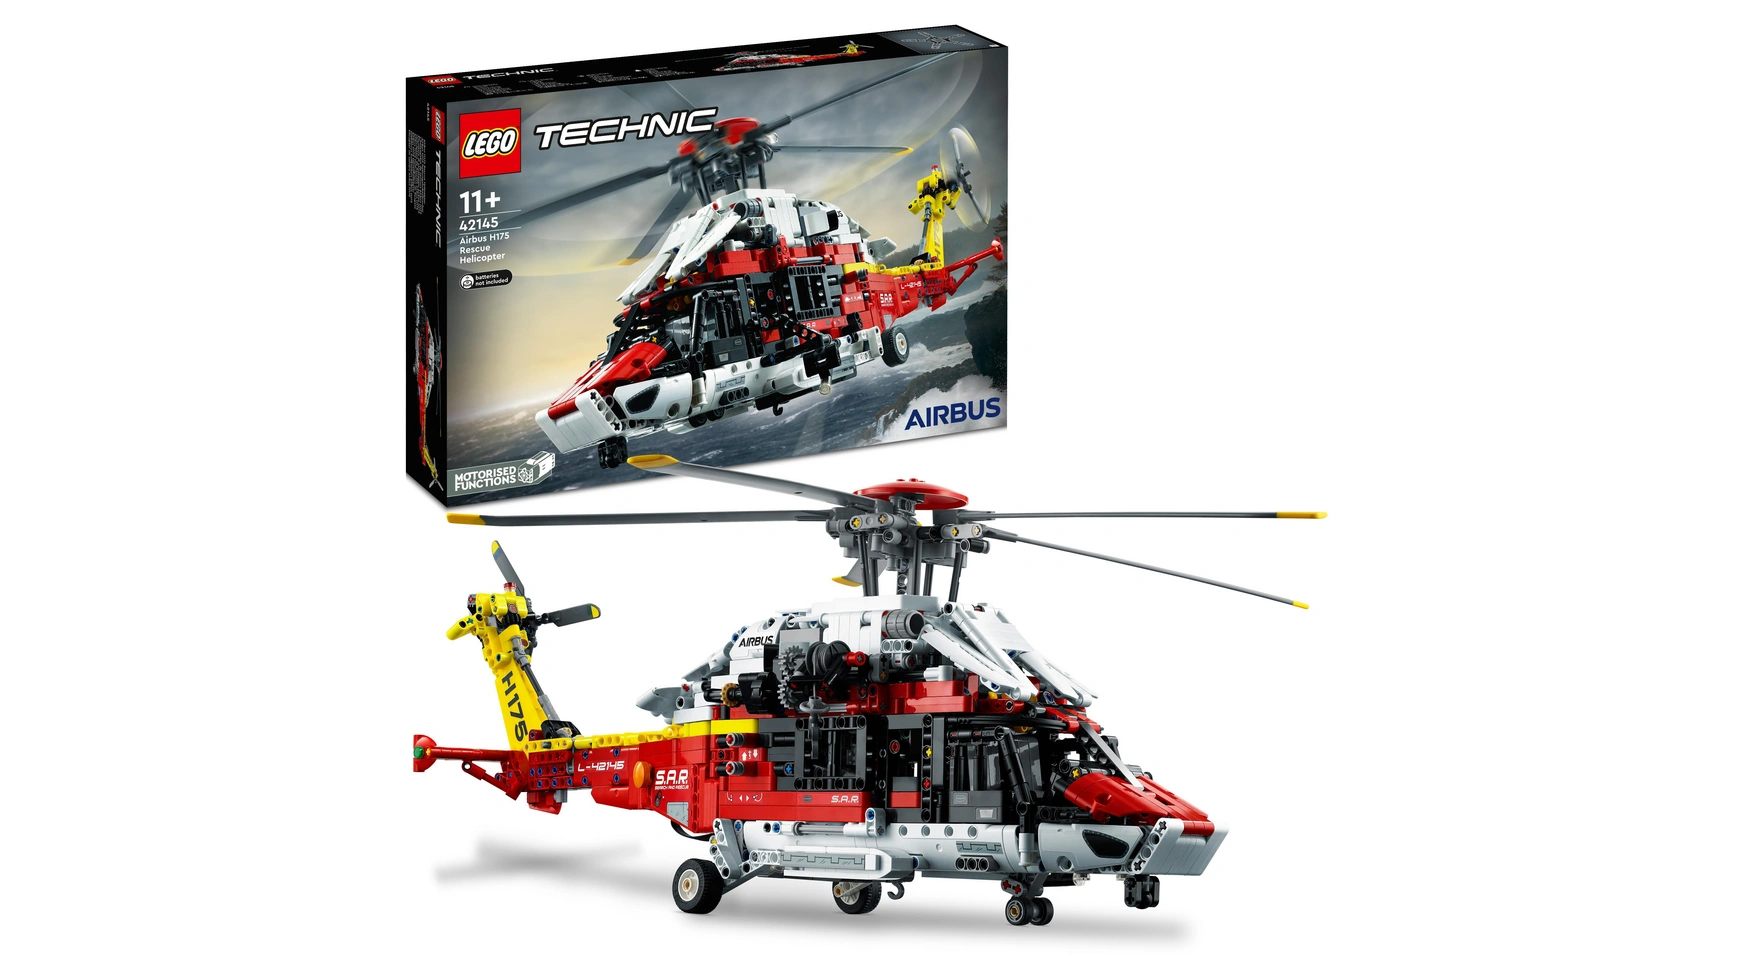 Lego Technic Набор моделей спасательного вертолета Airbus H175 цена и фото